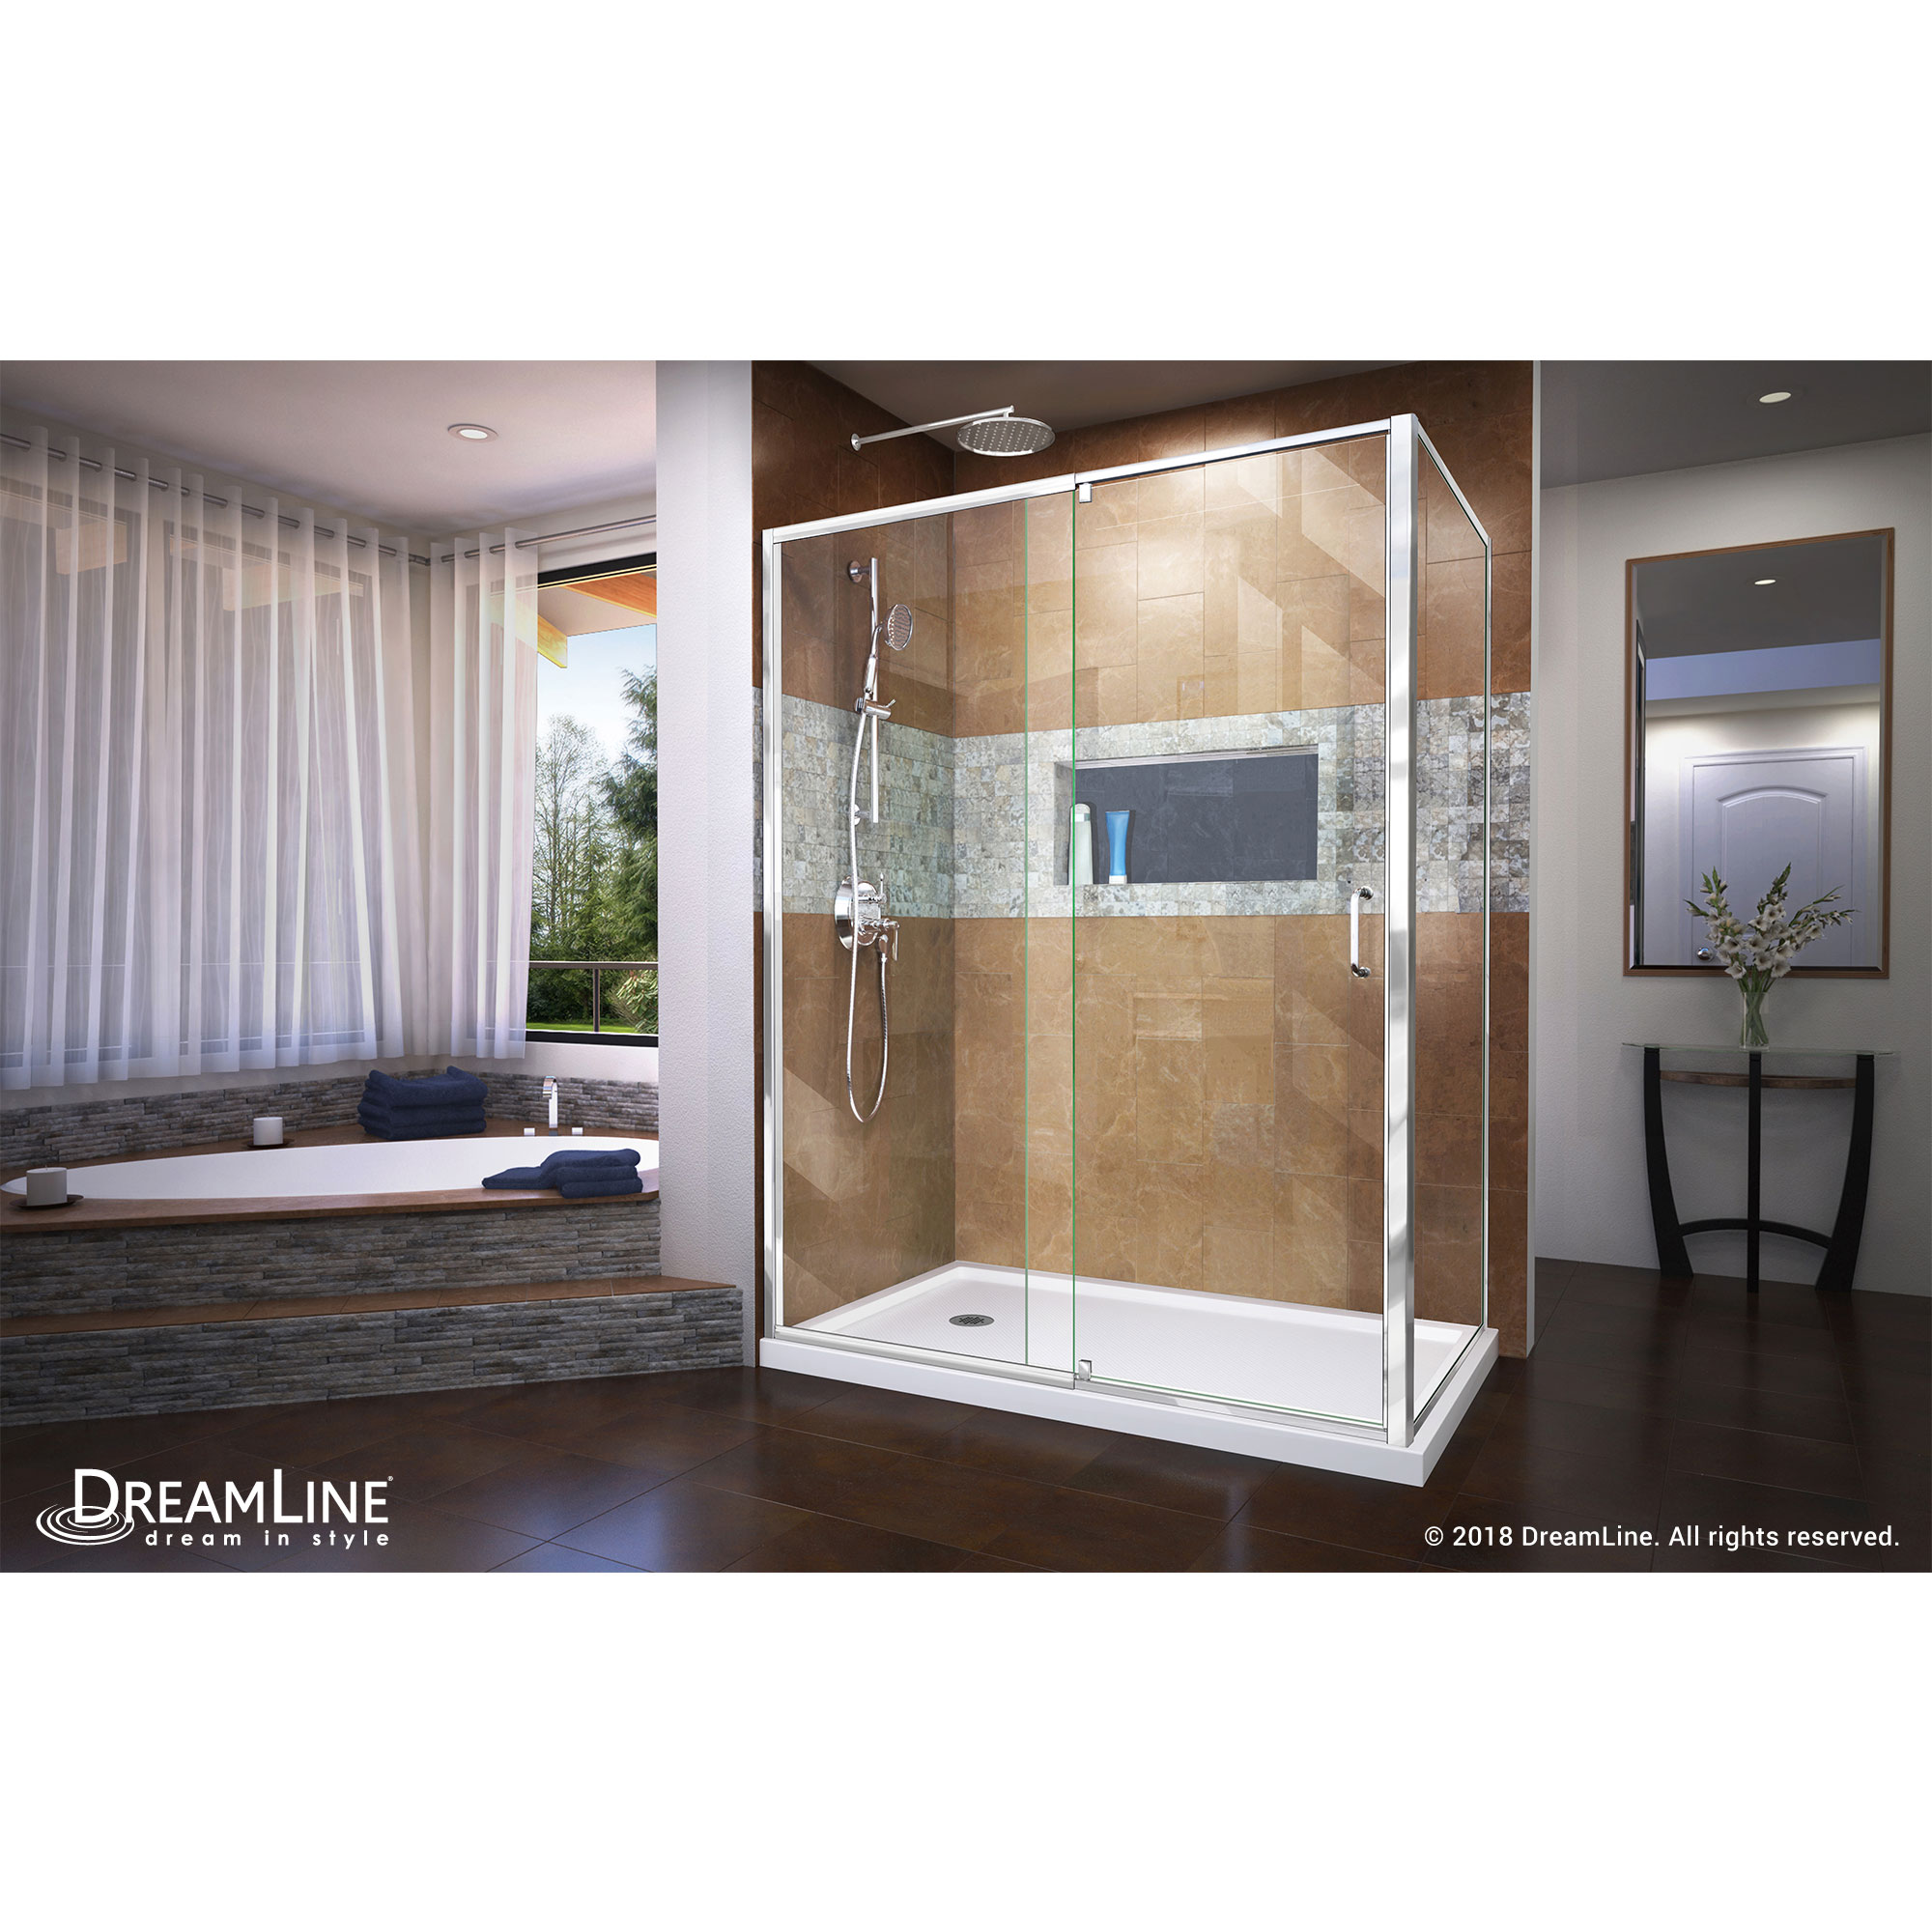 DreamLine Flex 36 in. D x 60 in. W Semi-Frameless Pivot Shower Enclosure in Chrome with Left Drain White Acrylic Base Kit